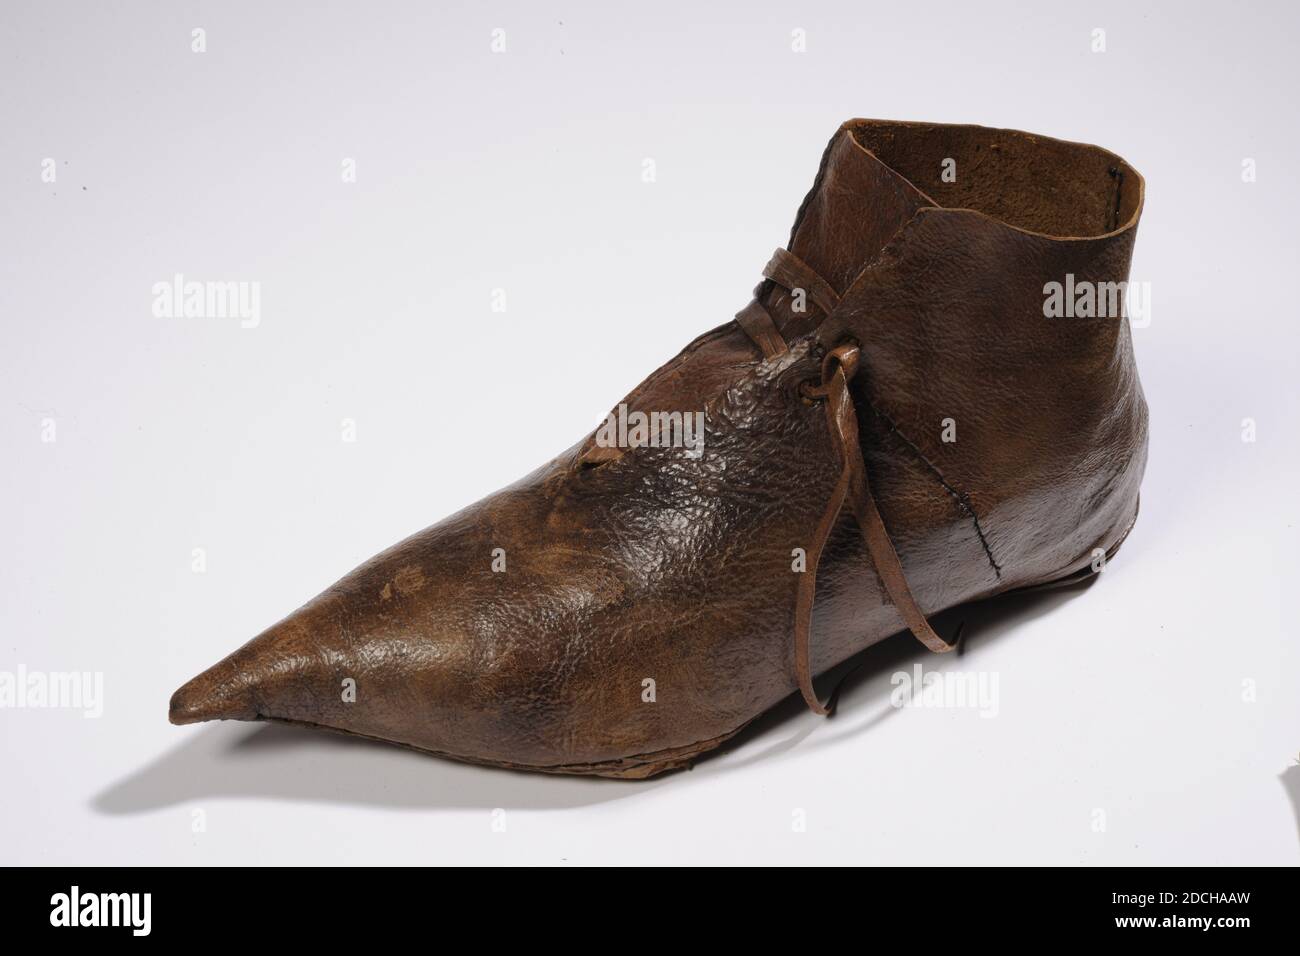 Scarpa toot, Anonymous, 14 ° secolo, cucita, Generale: 11.8 x 7.8 x 25cm 118 x 78 x 250mm, scarpa Toot in pelle, anche chiamata scarpa Beak, a causa della punta appuntita. Si tratta di una scarpa alta che si erge sopra la caviglia. La scarpa è realizzata interamente in pelle, compresi i lacci. C'è un foro nella suola. La scarpa è imbottita con fieno e un tessuto di maglia marrone, 1995 Foto Stock